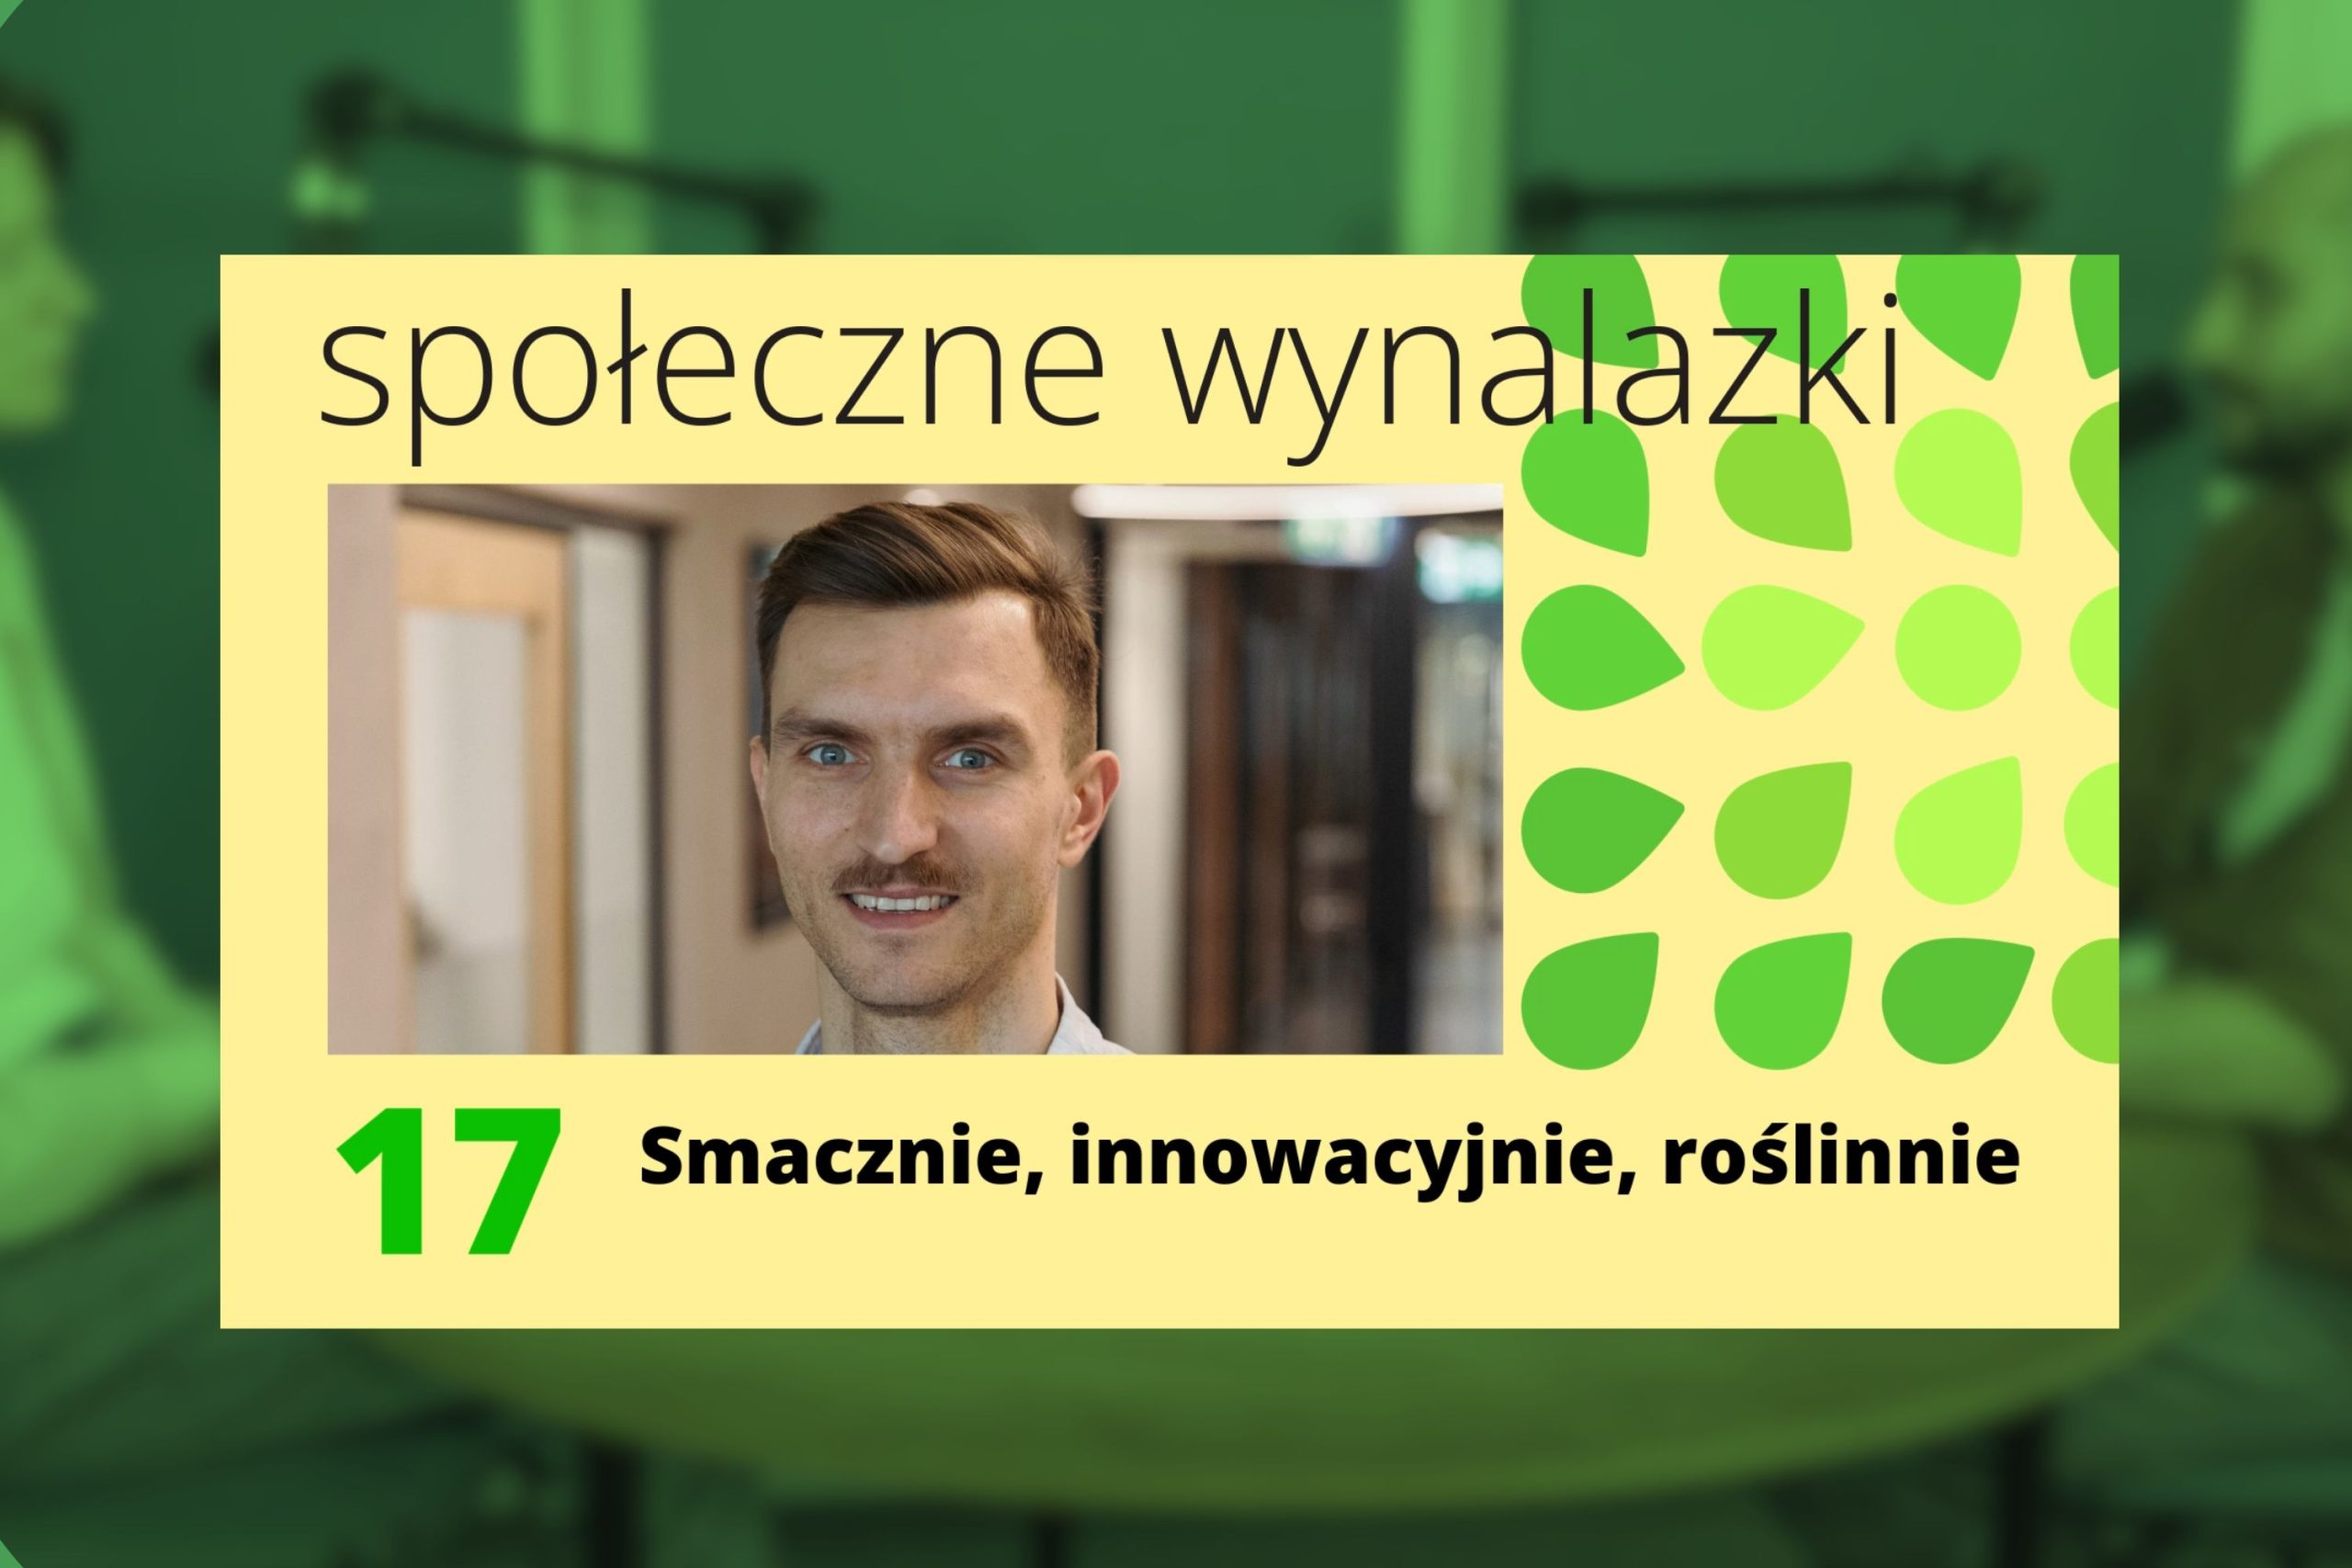 okładka 17 odcinka podcastu społeczne wynalazki: zdjęcie Macieja Obrębskiego z RoślinnieJemy oraz tytuł "Smacznie, innowacyjnie, roślinnie".